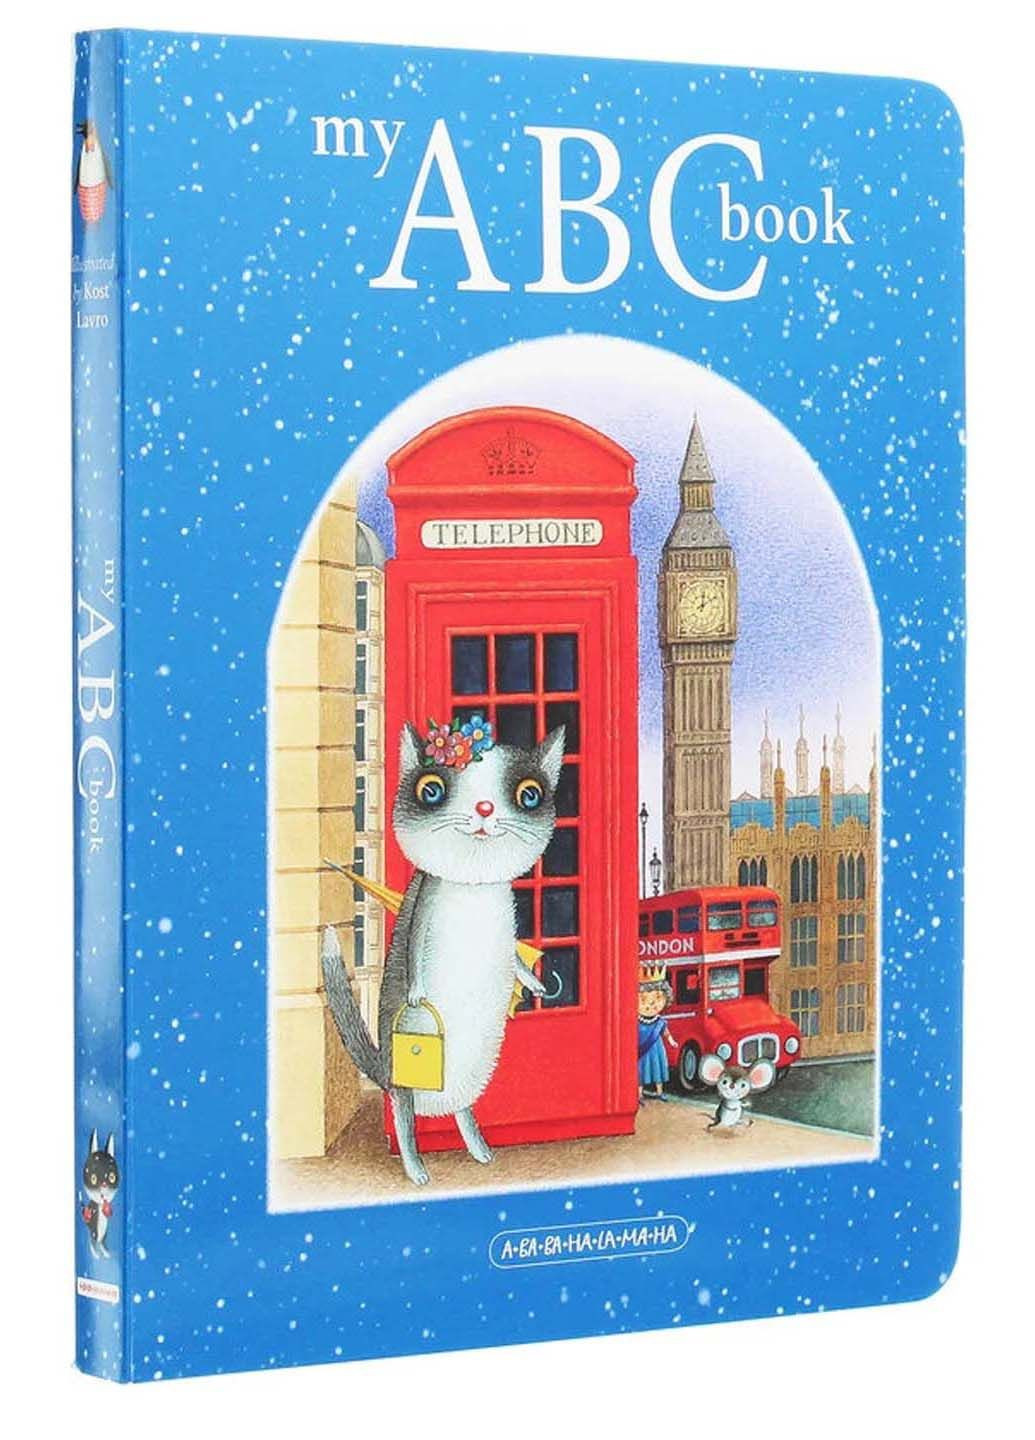 Книга My ABC book. Английский алфавит 2020г 26 с Издательство «А-ба-ба-га-ла-ма-га» (293058785)